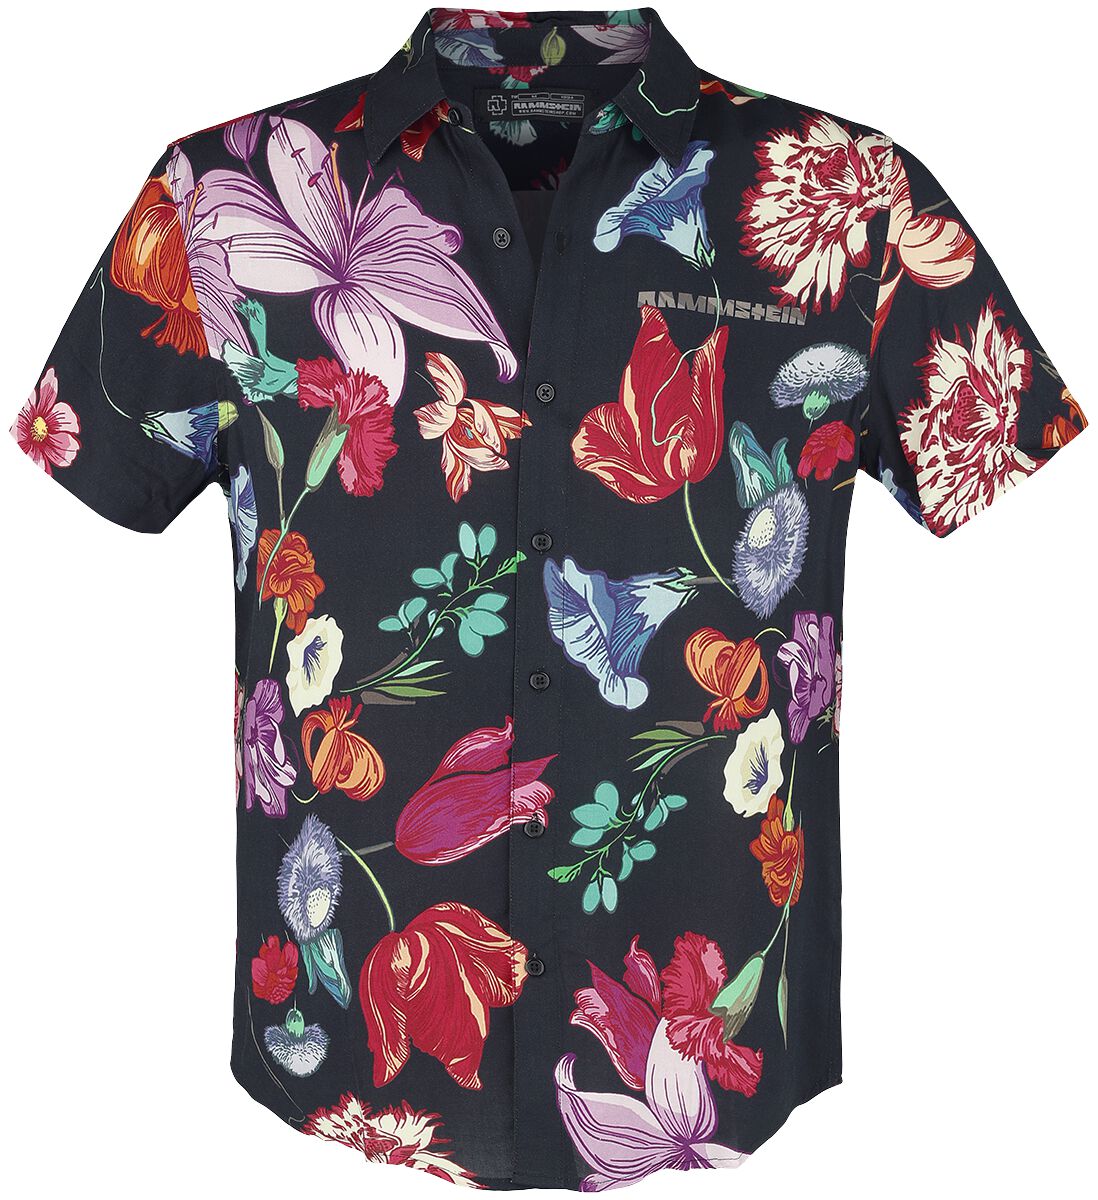 Rammstein Kurzarmhemd - Blumen - S bis 5XL - für Männer - Größe M - multicolor  - Lizenziertes Merchandise!